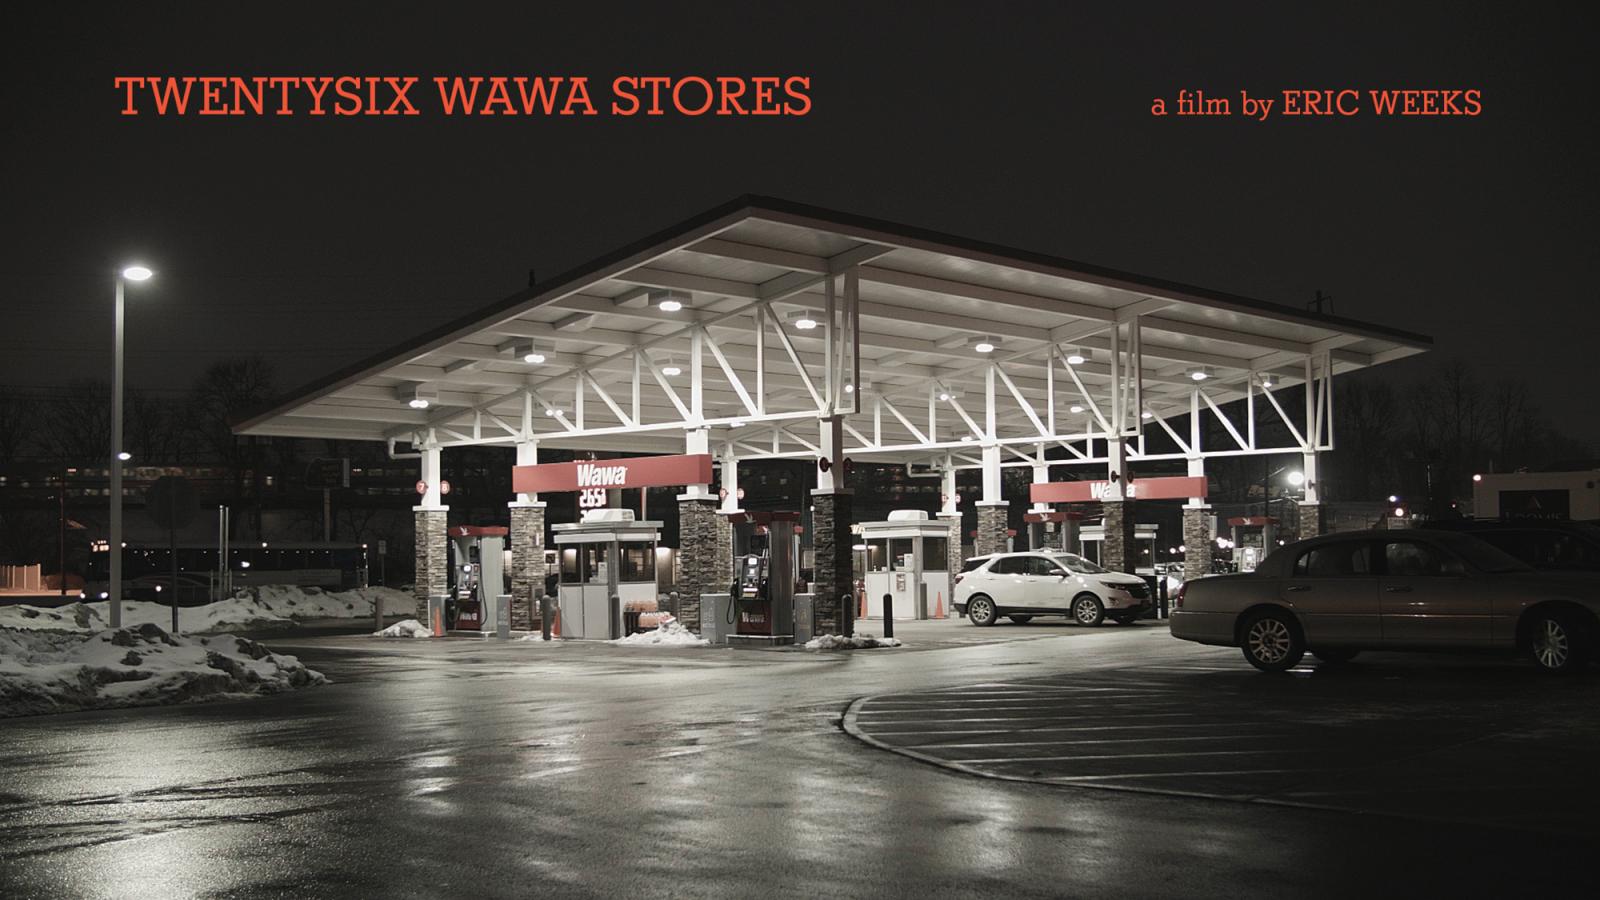 Thumbnail of twentysix wawa stores